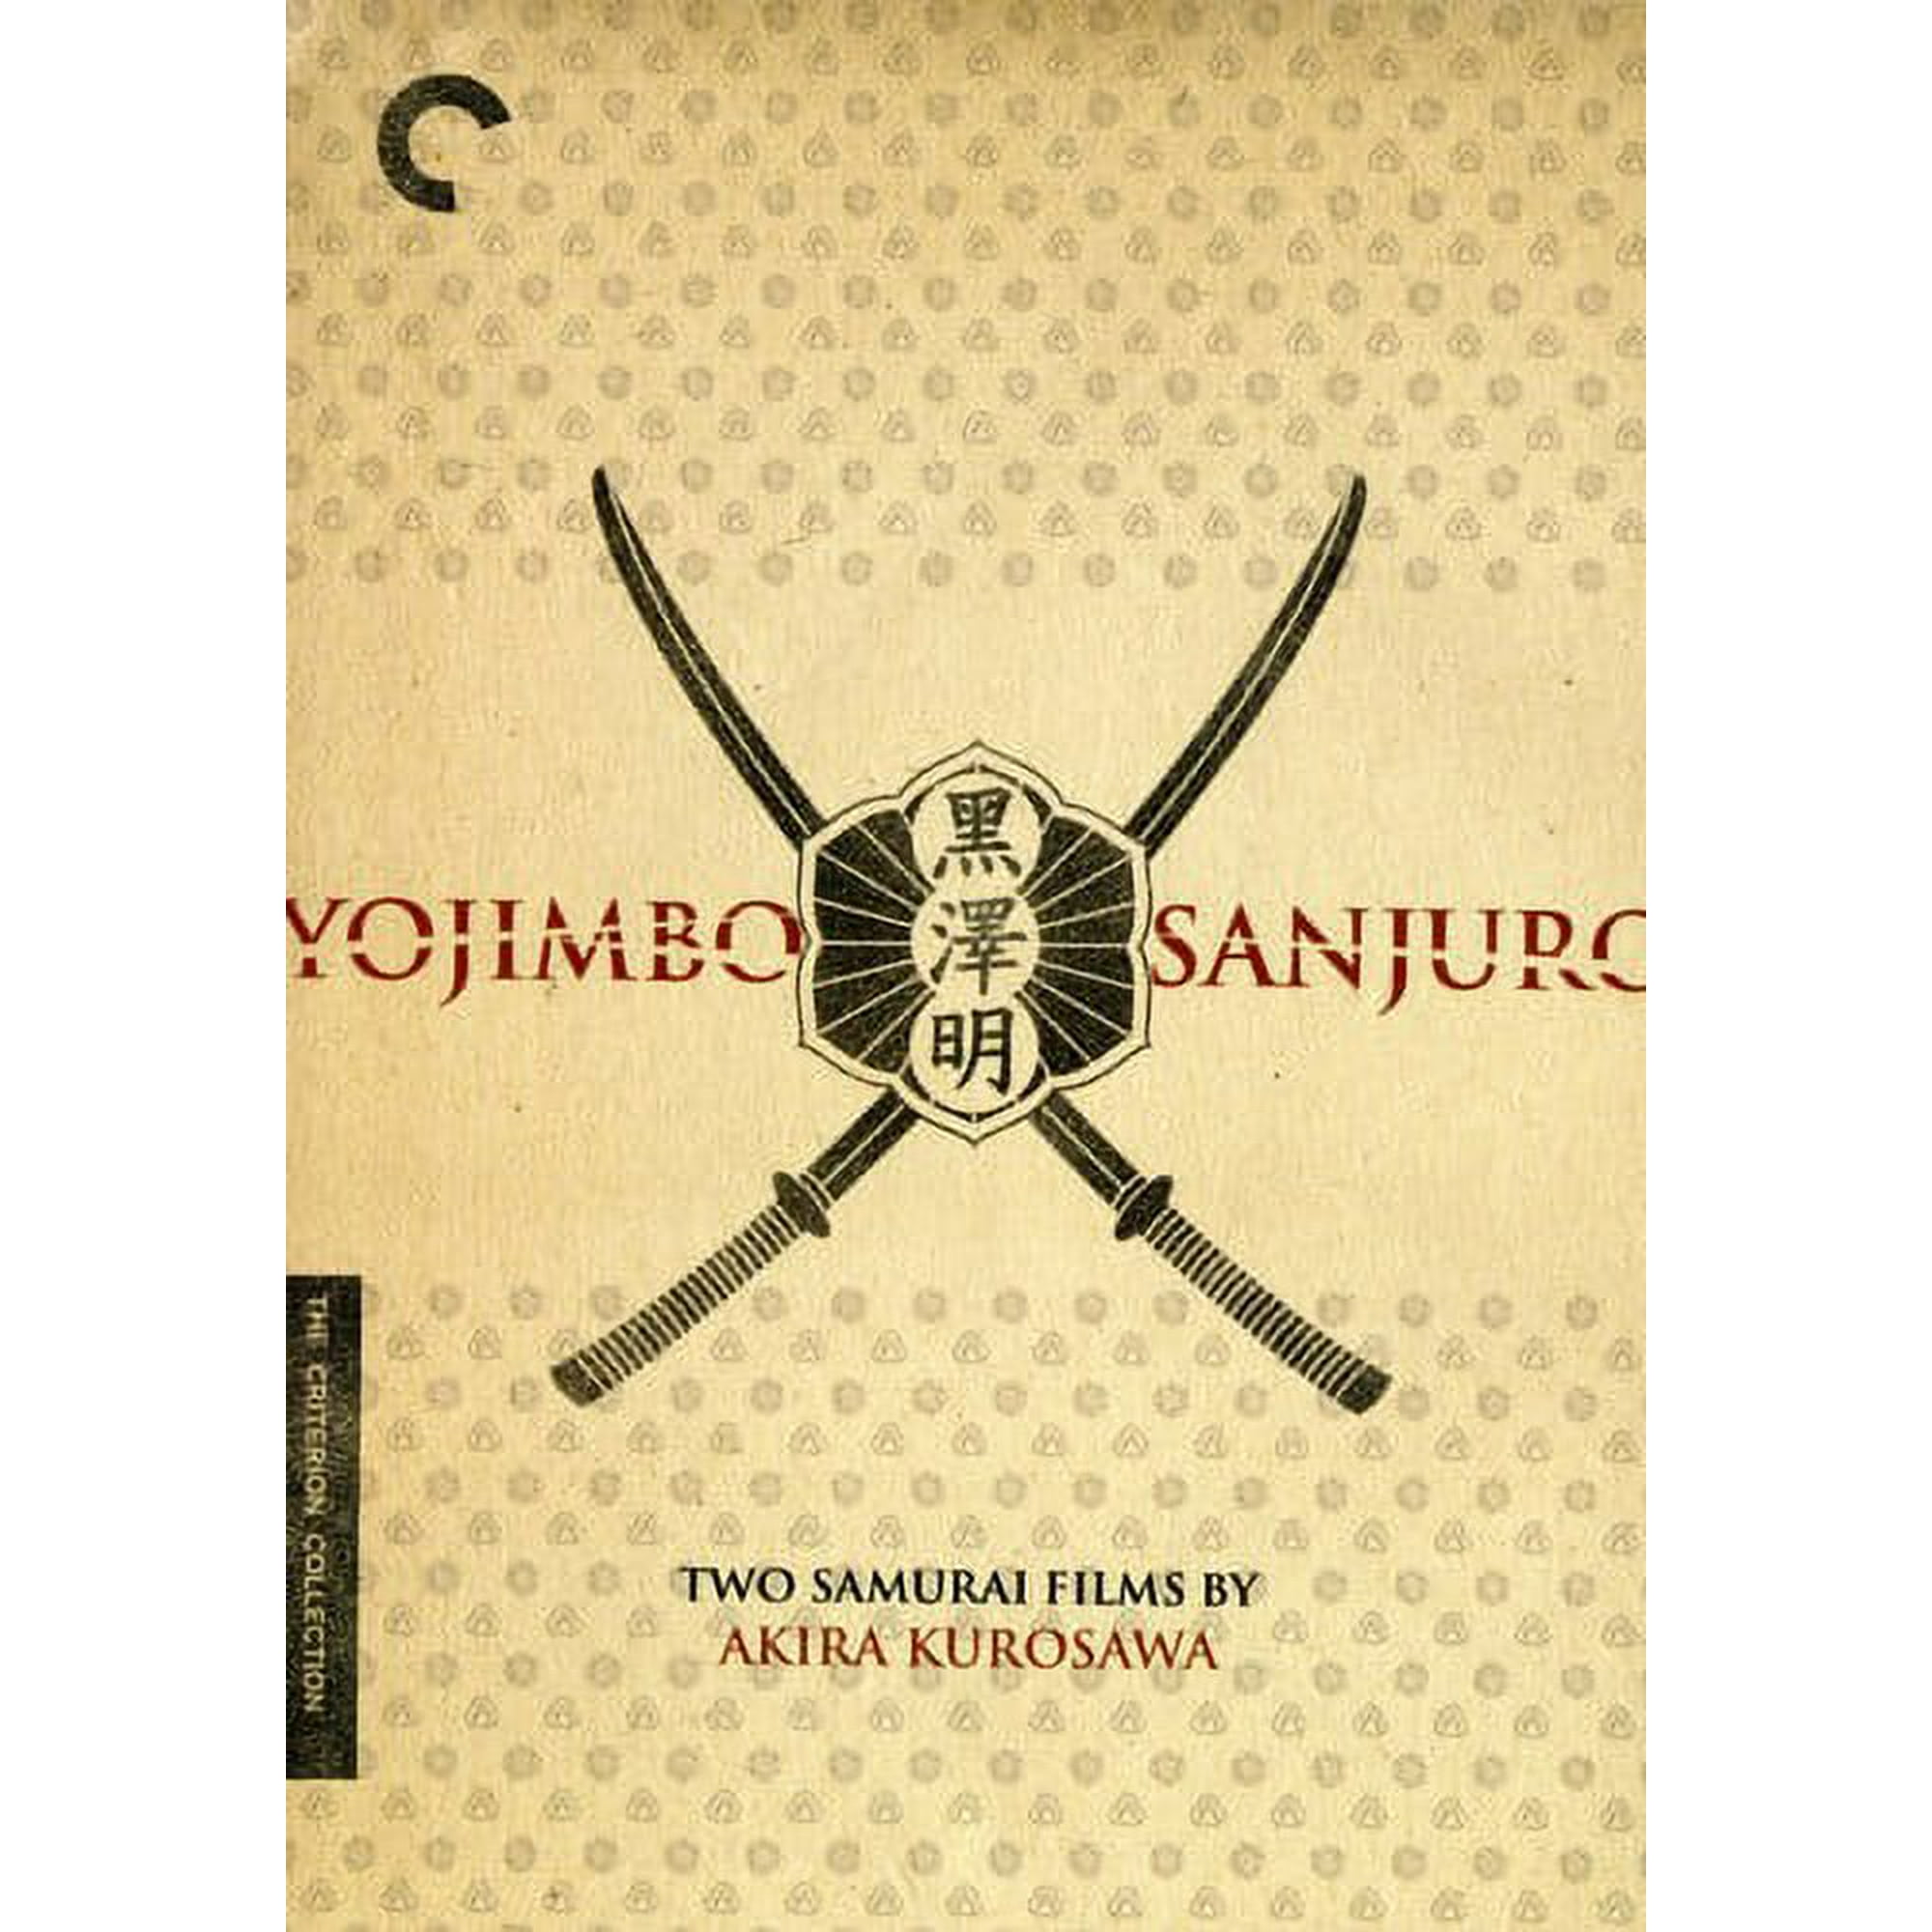 yojimbo sanjuro